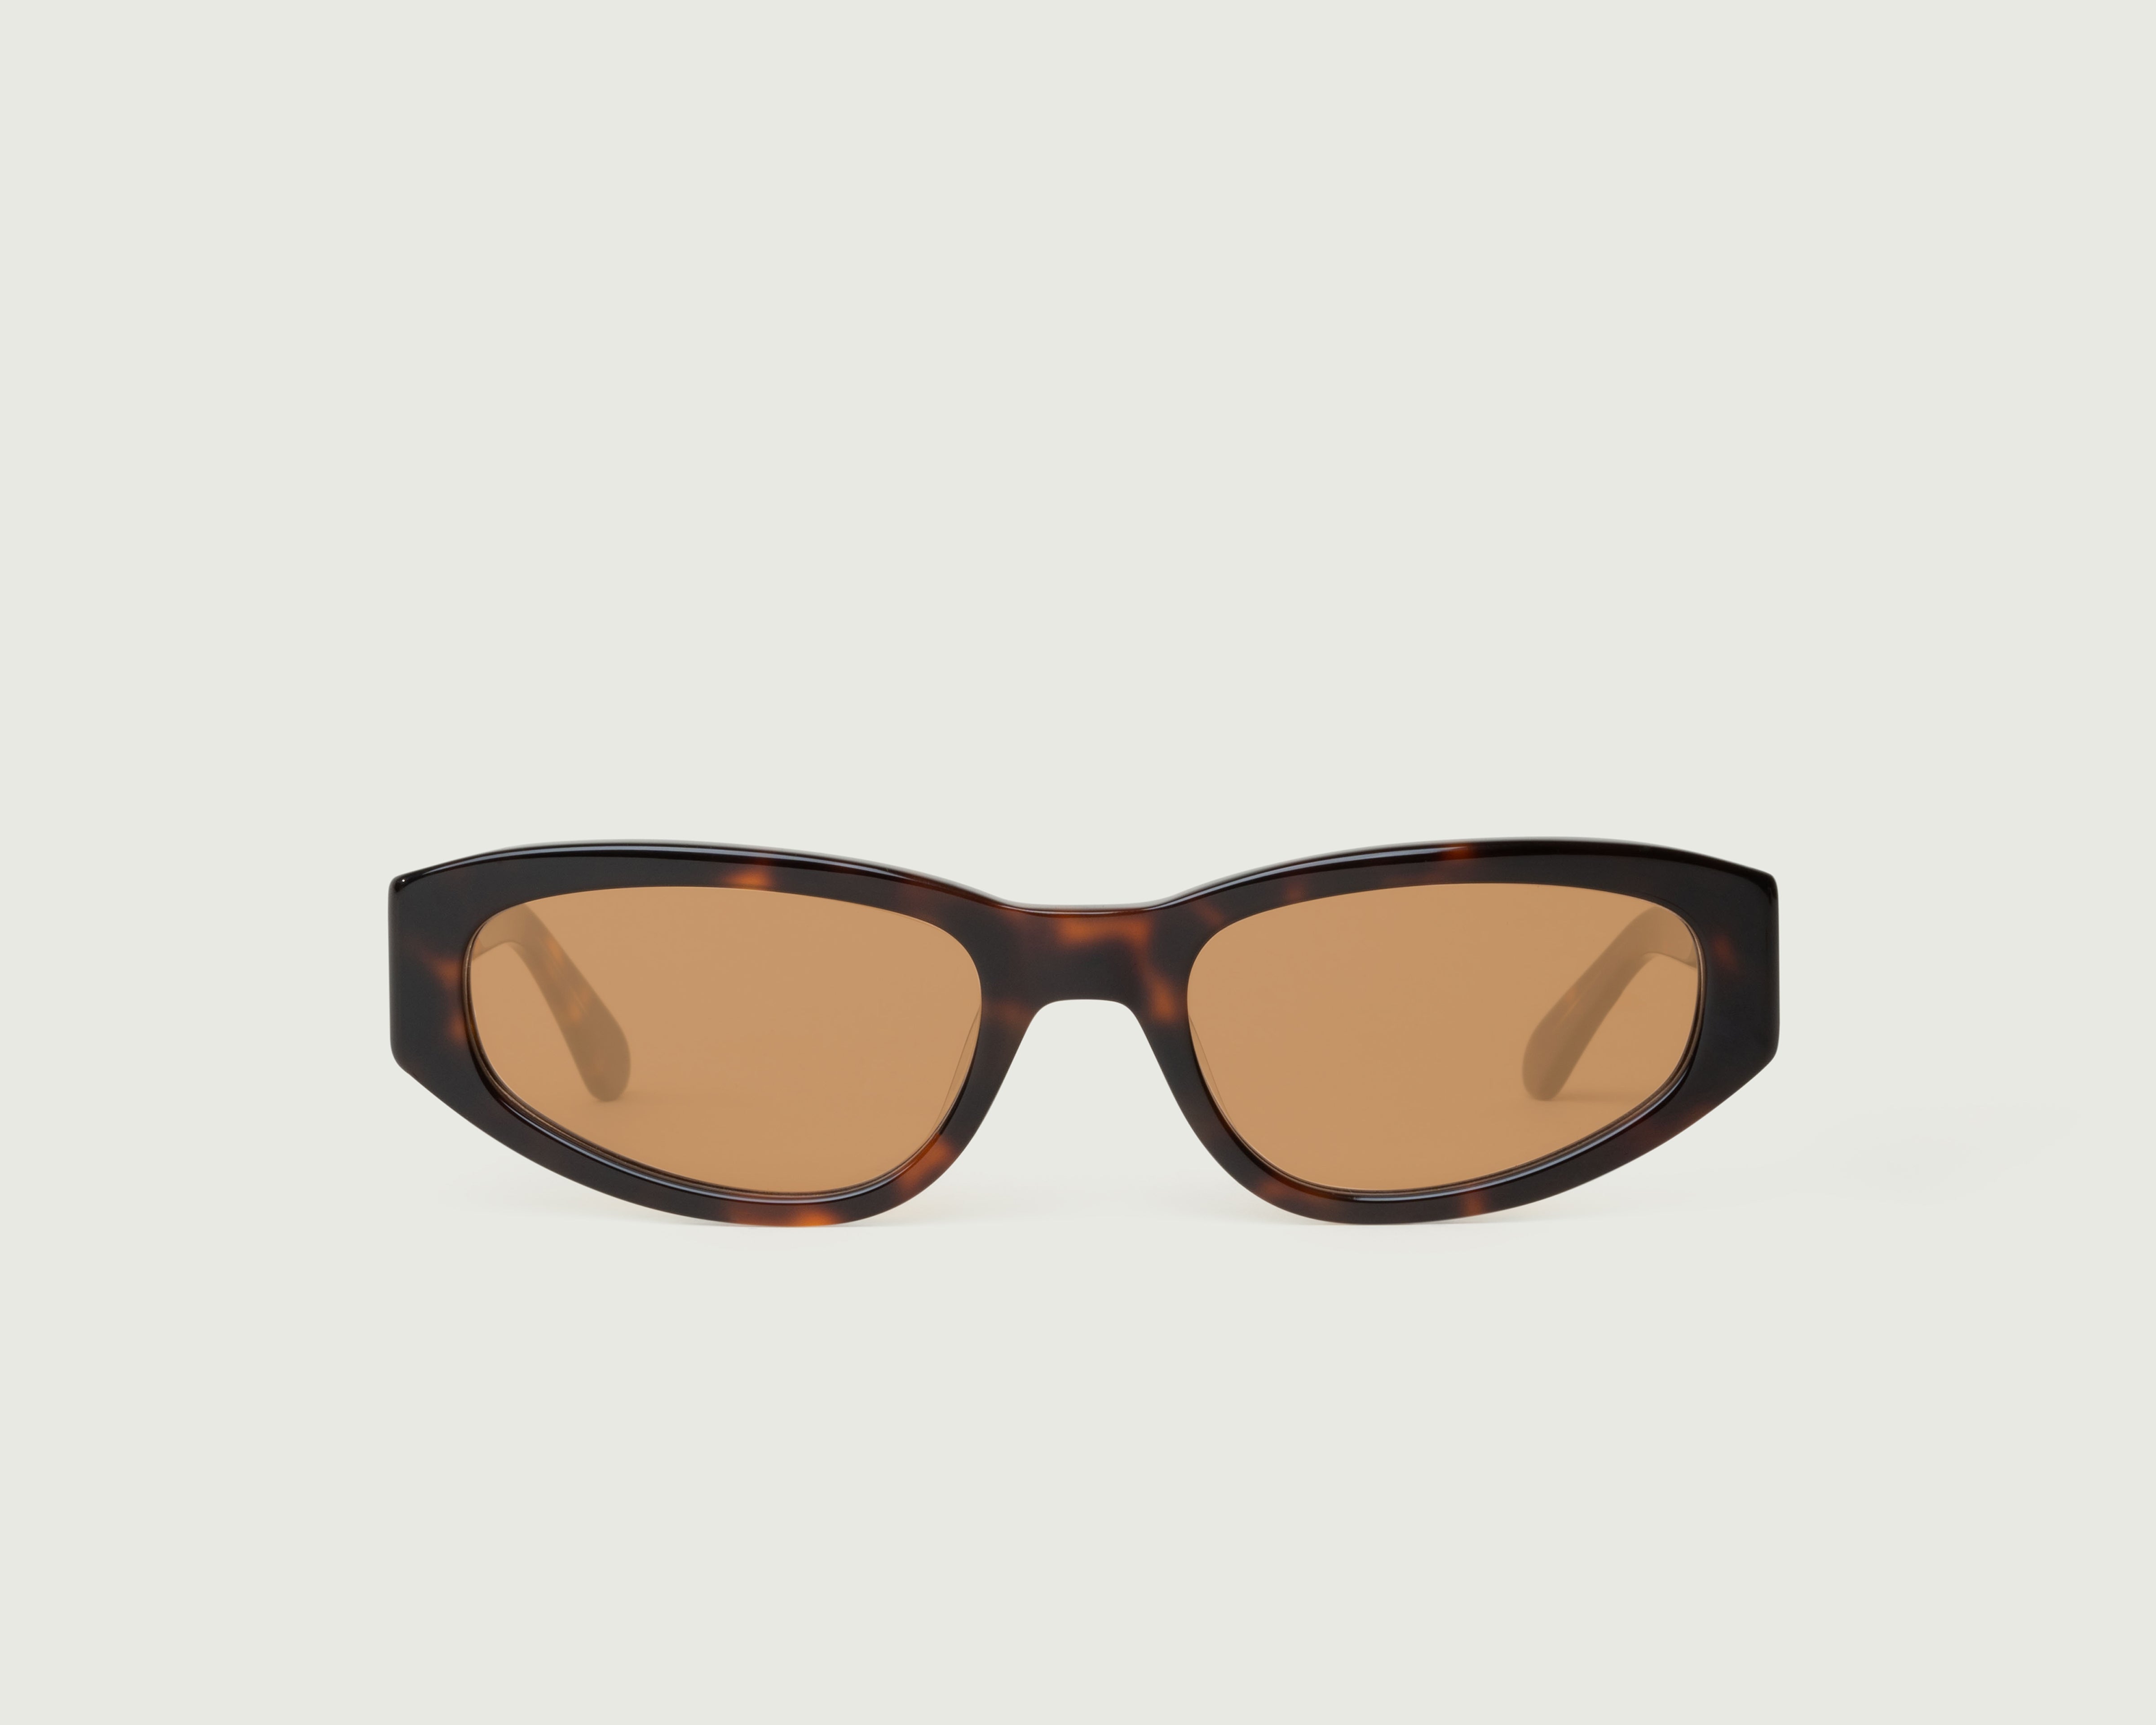 Safari Tort::June Sunglasses cateye brown plastic front